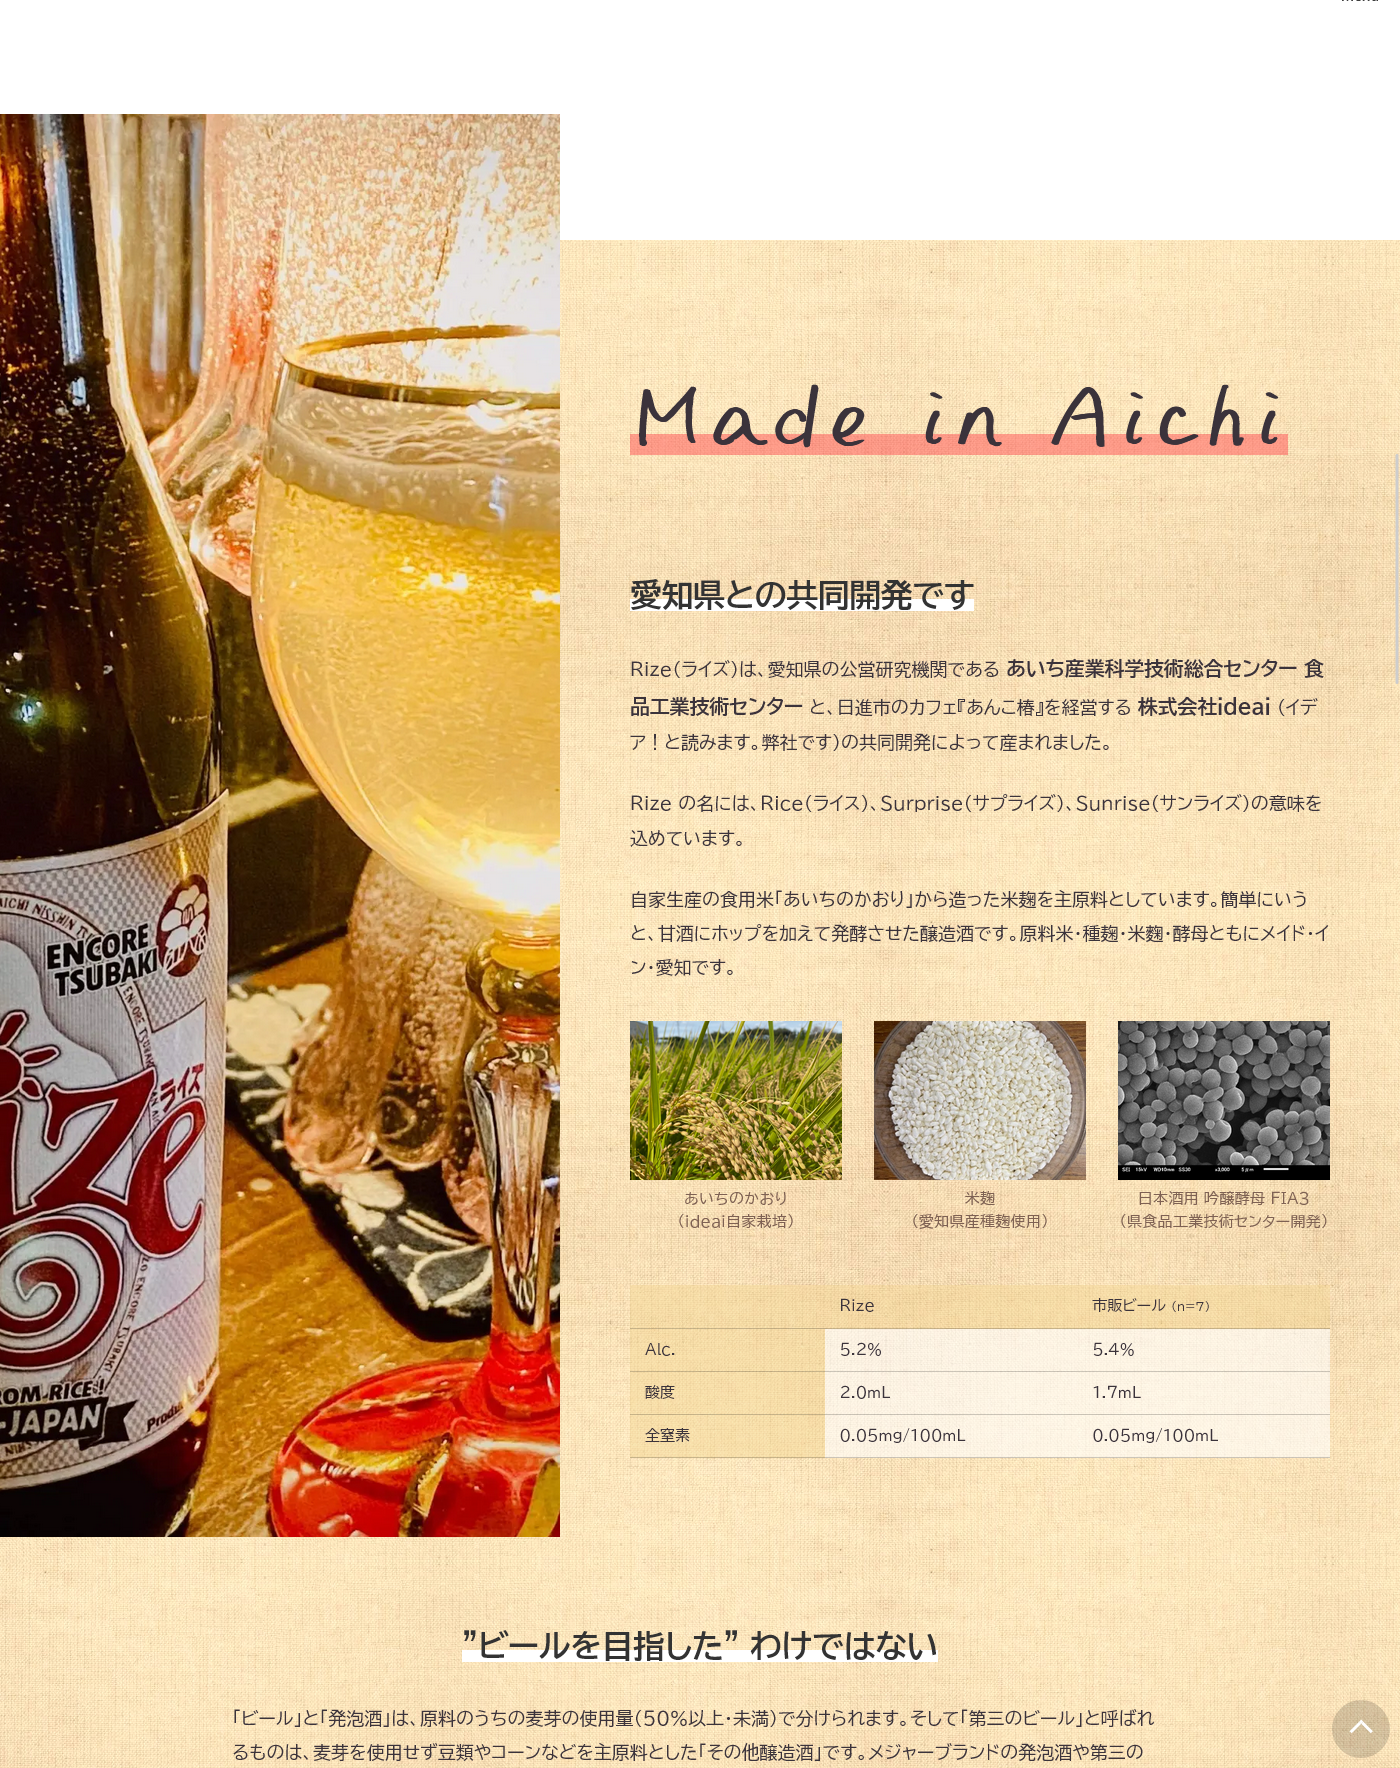 愛知県との共同開発。食用米である「あいちのかおり」で造った米麹を使用。ビールを目指したわけではないところがポイント！